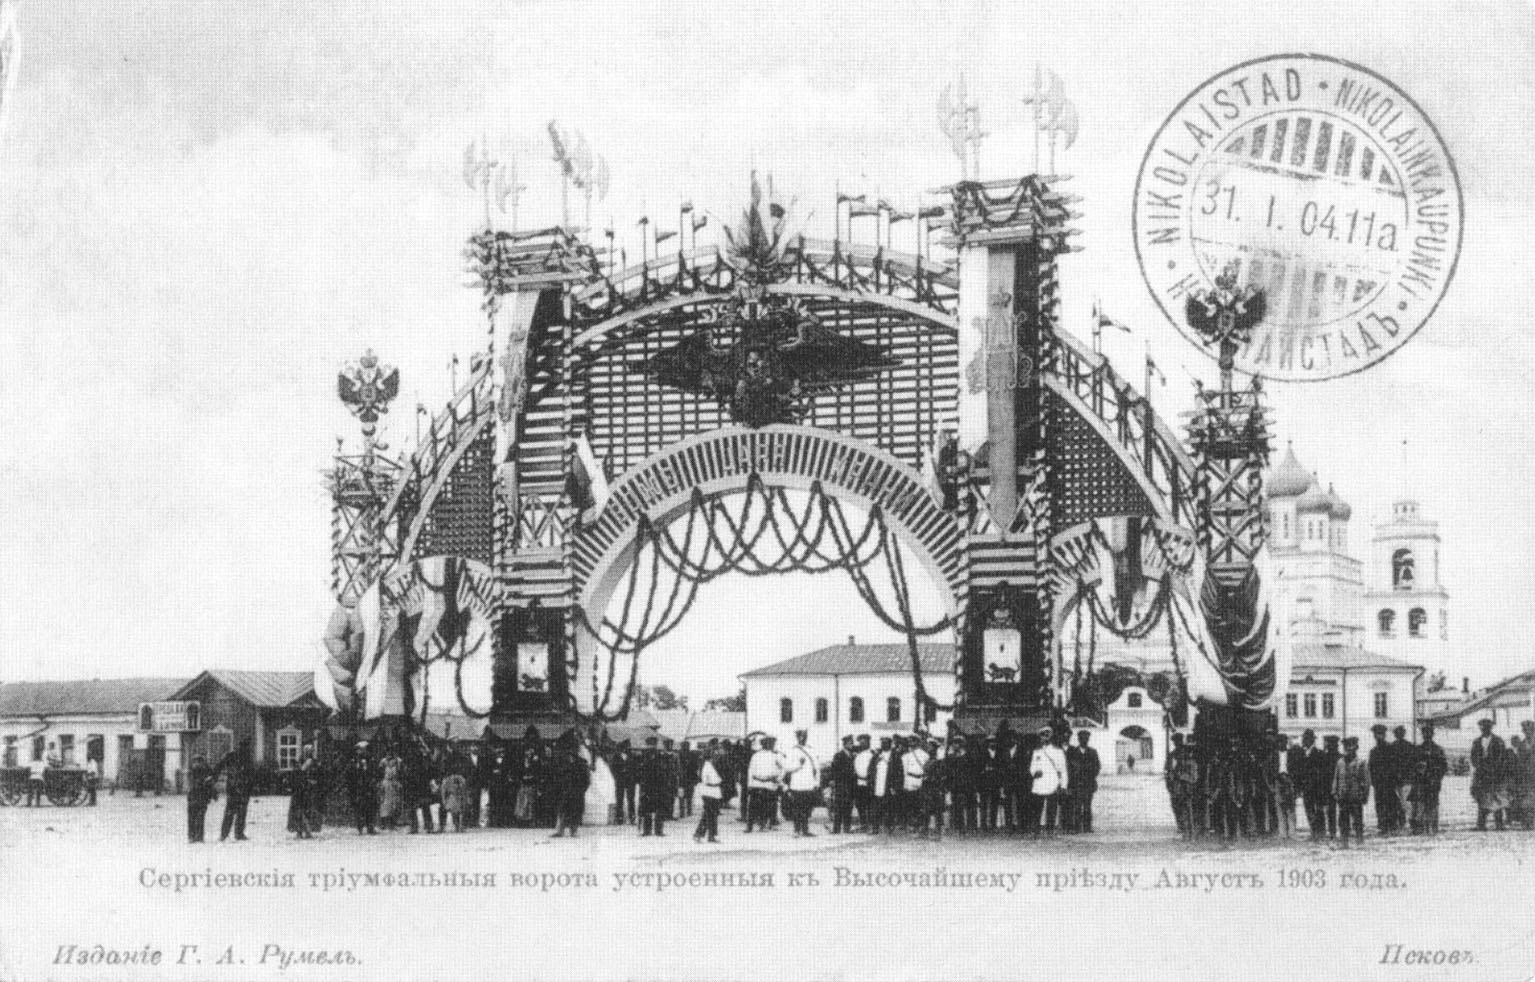 Псков. Сергиевские триумфальные ворота устроенные к Высочайшему приезду. август 1903 года.